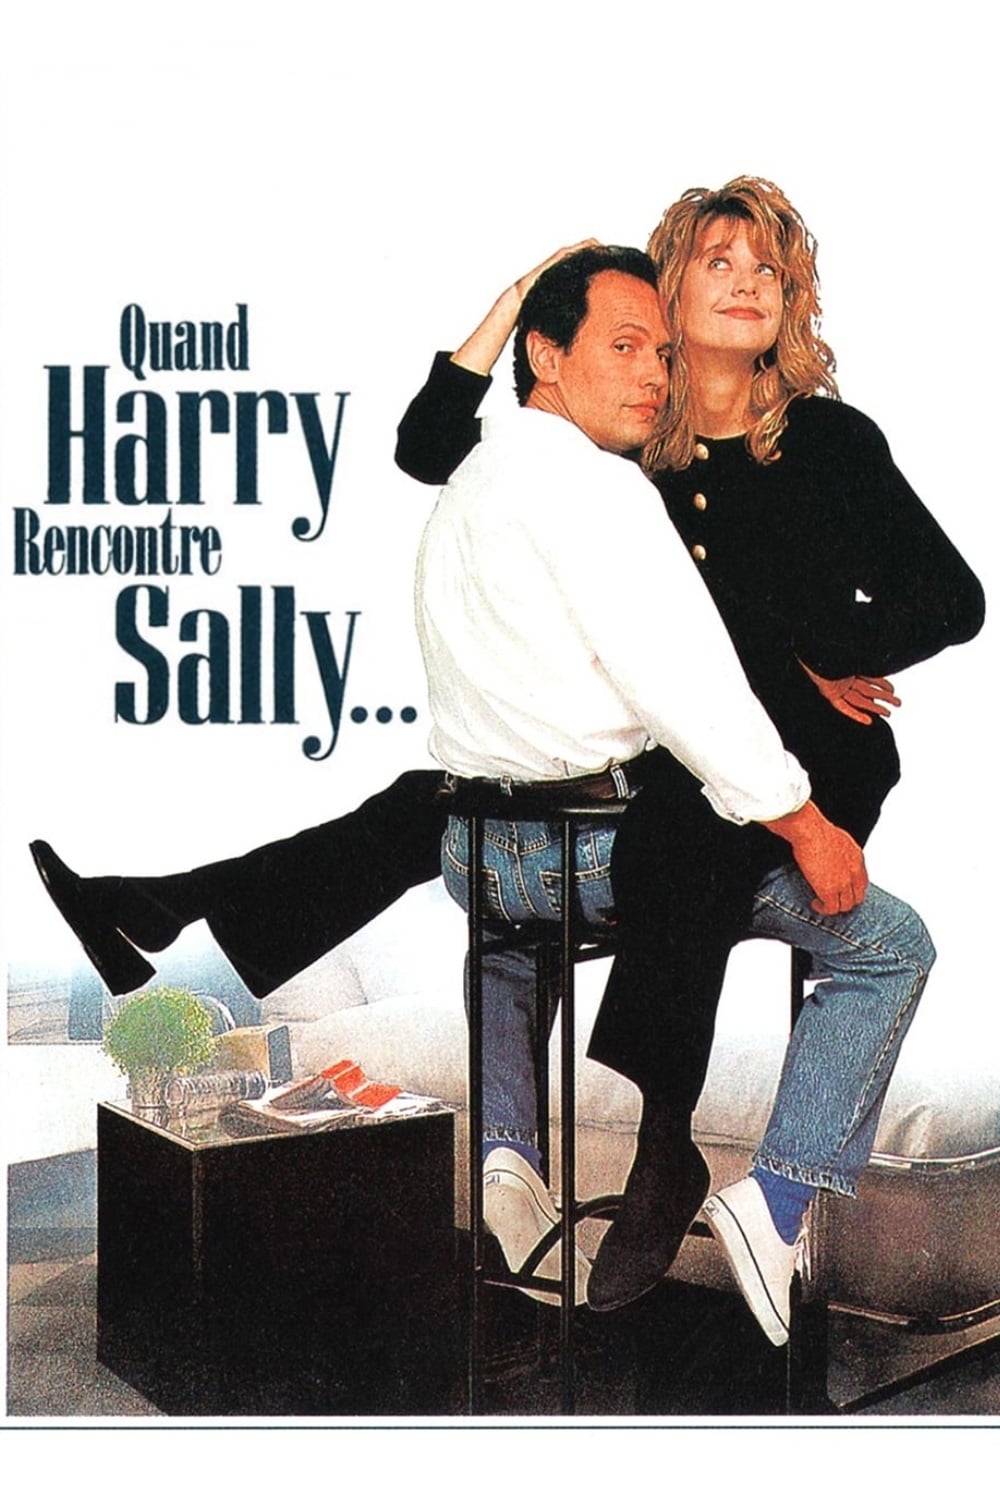 Quand Harry rencontre Sally est-il disponible sur Netflix ou autre ?